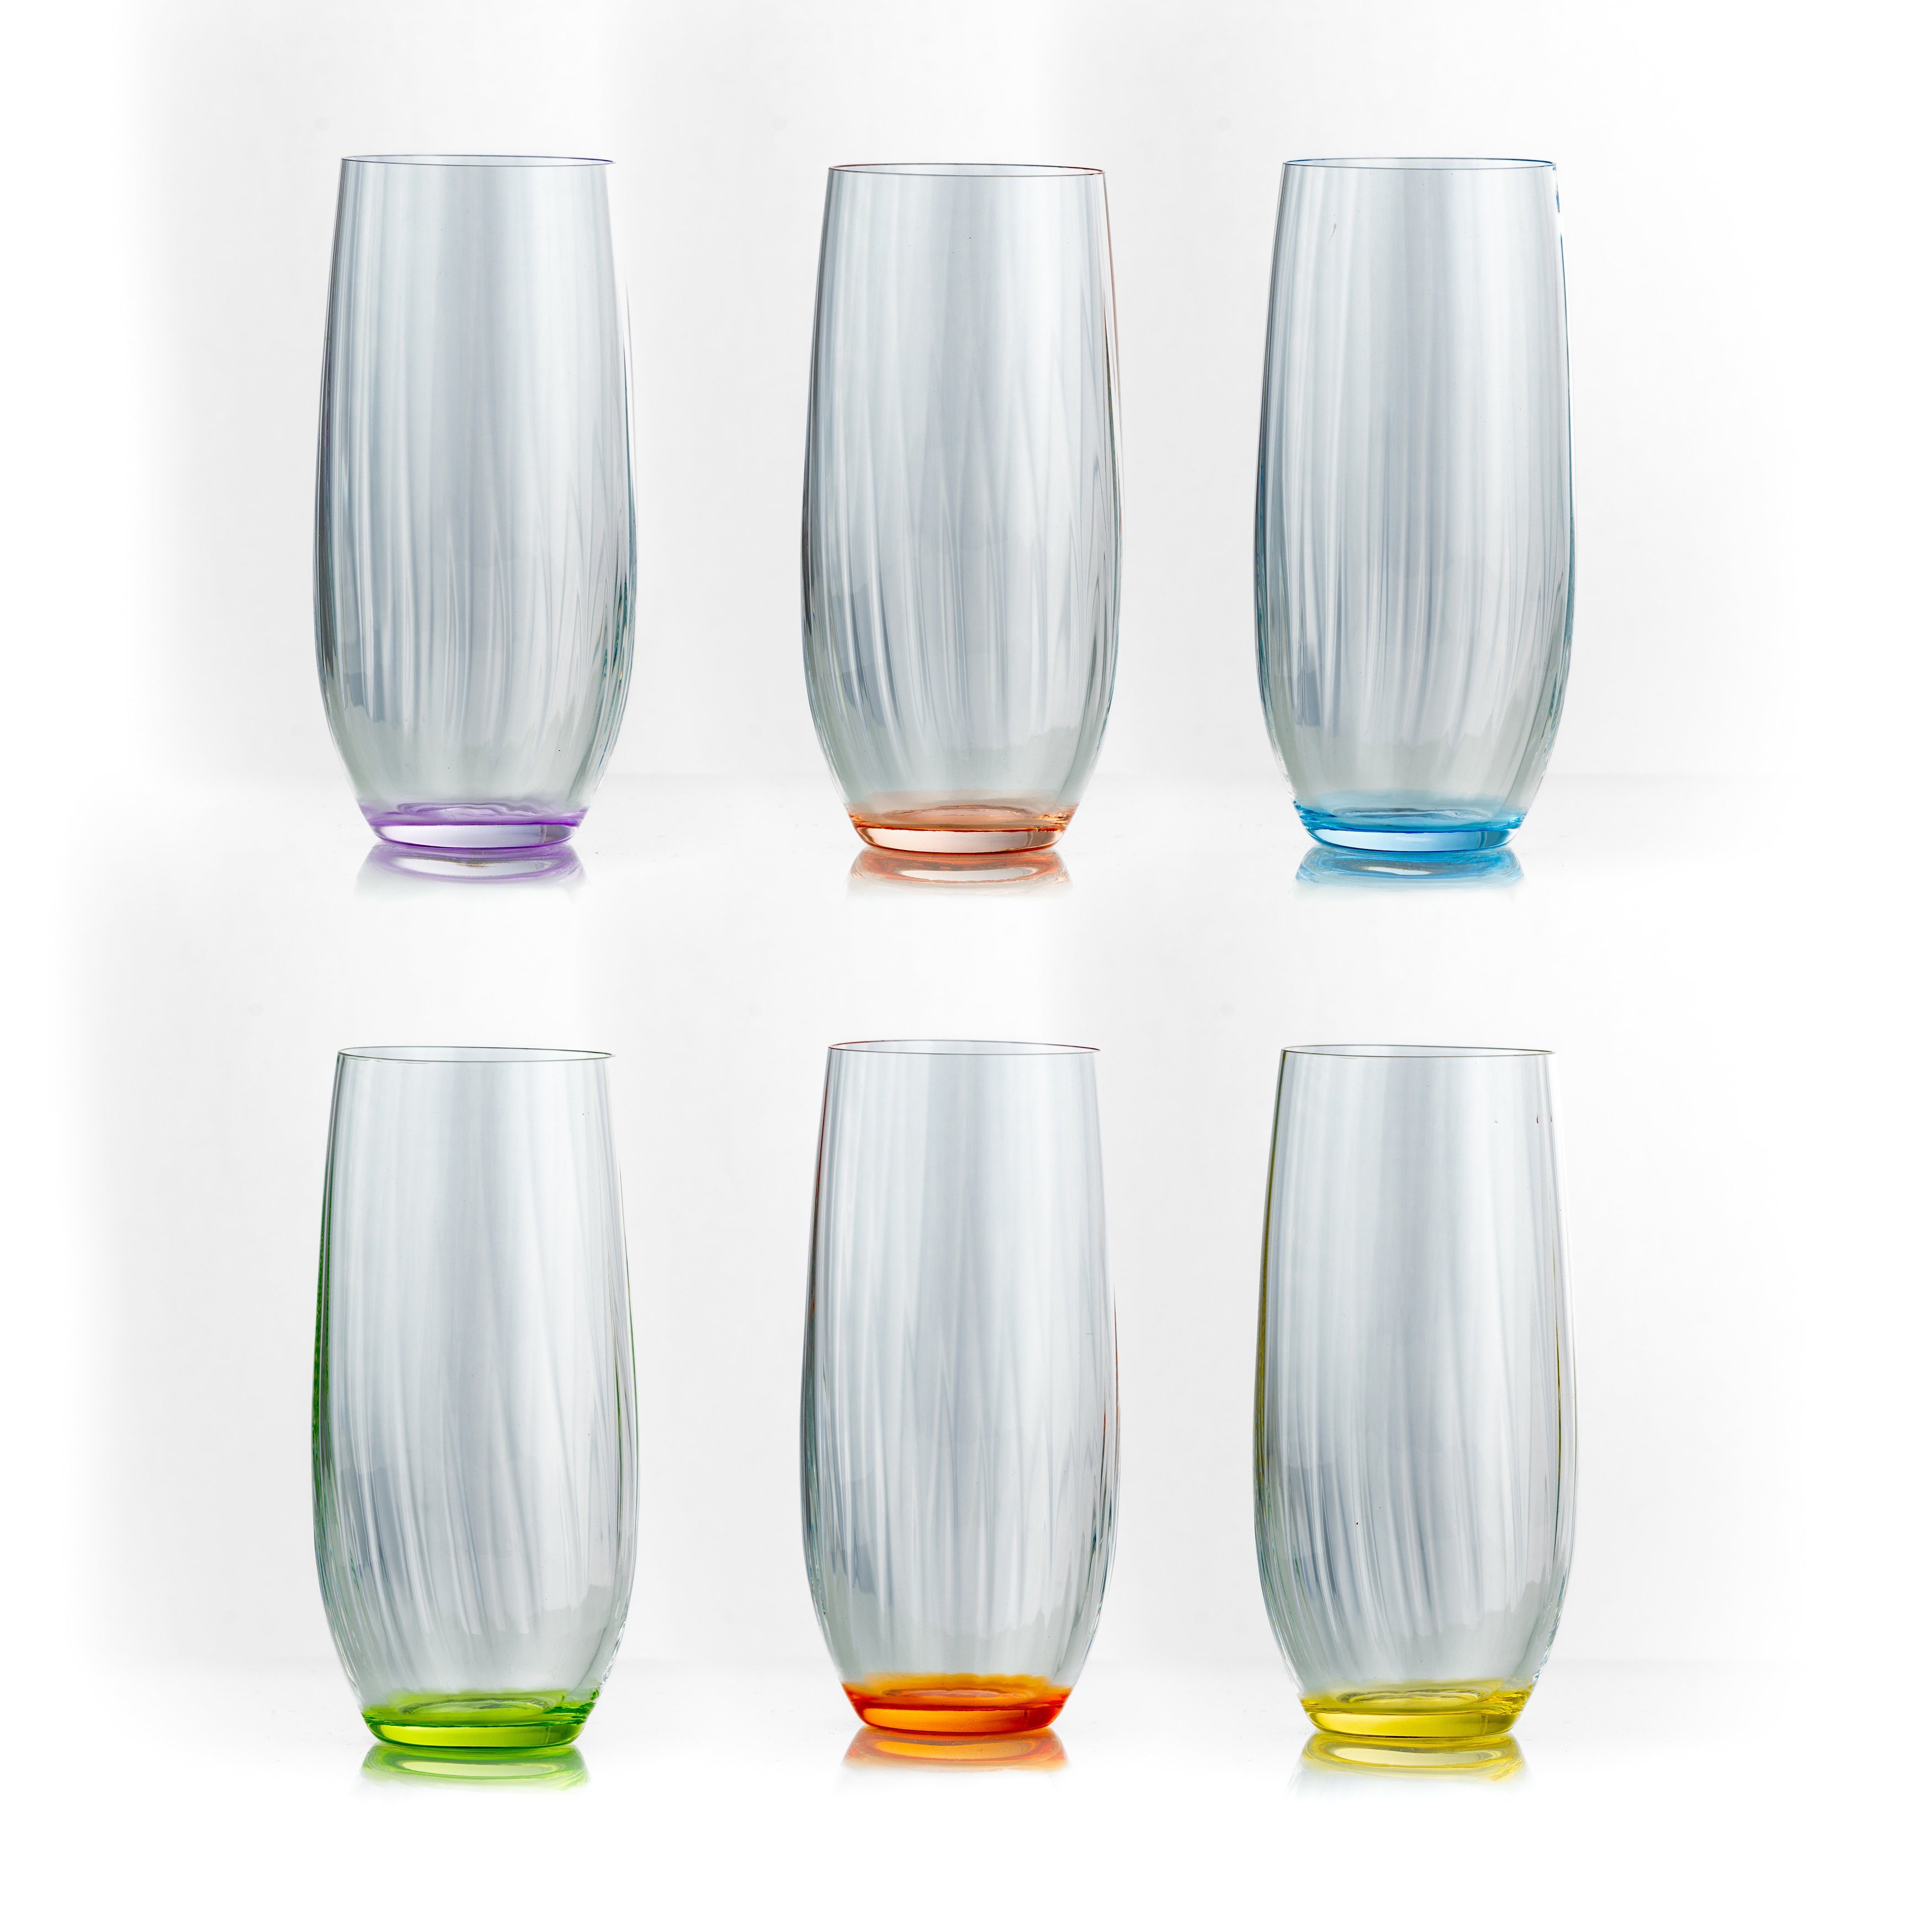 Crystalex Longdrinkglas Club 350 ml Longdrinks 6er Set, Kristallglas, 6-teilig, mehrfarbig, geriffelt